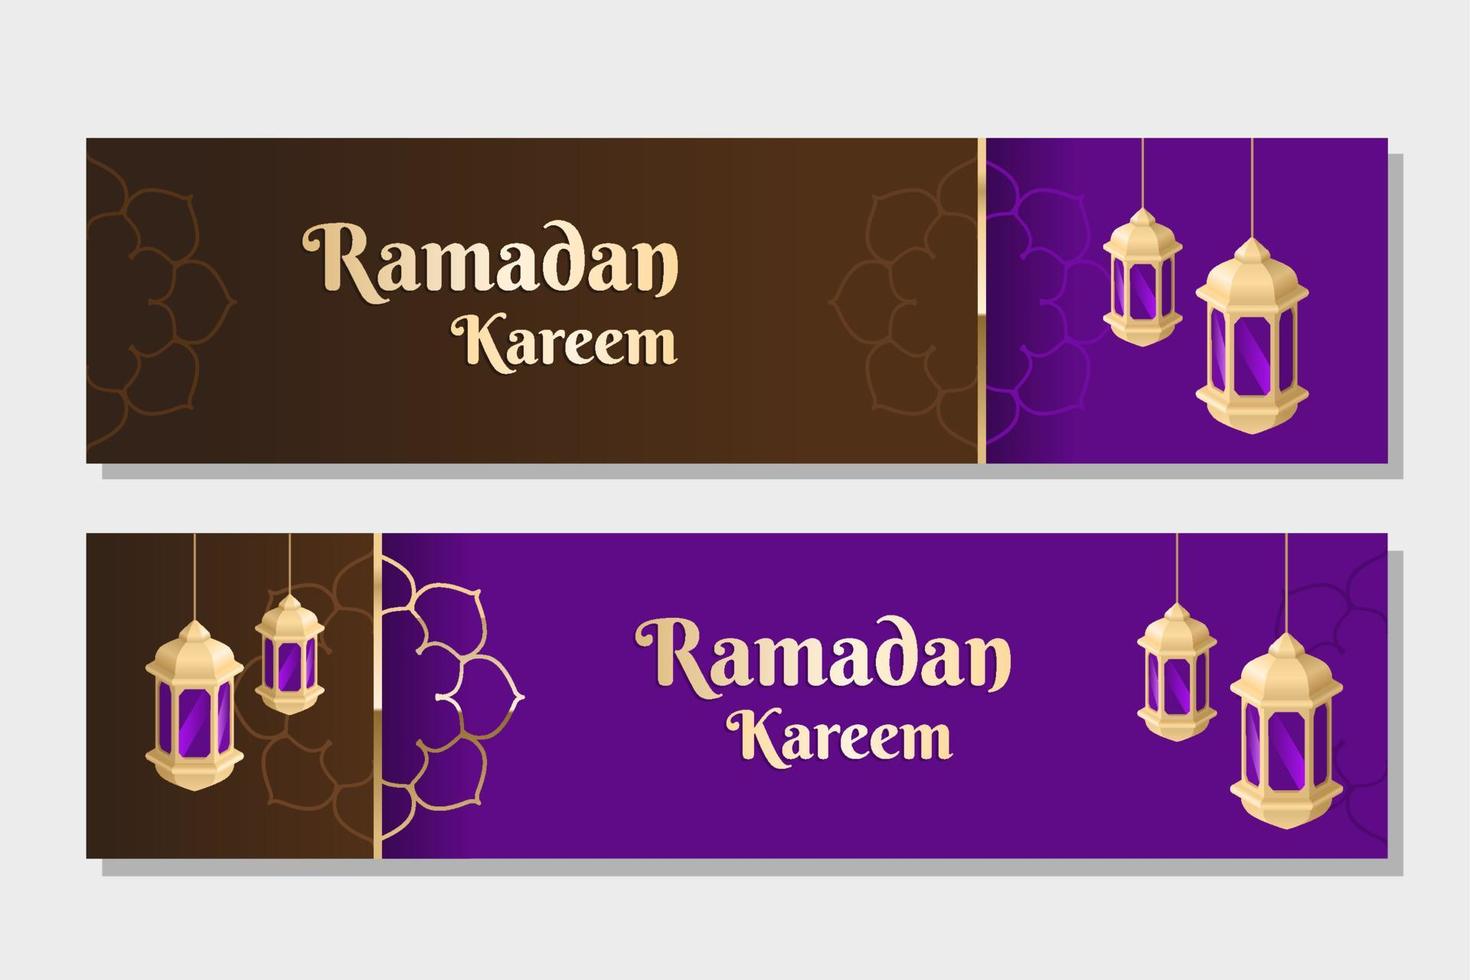 mês sagrado islâmico de jejum, ramadan kareem web banner design com lanternas douradas sobre fundo roxo e marrom. vetor